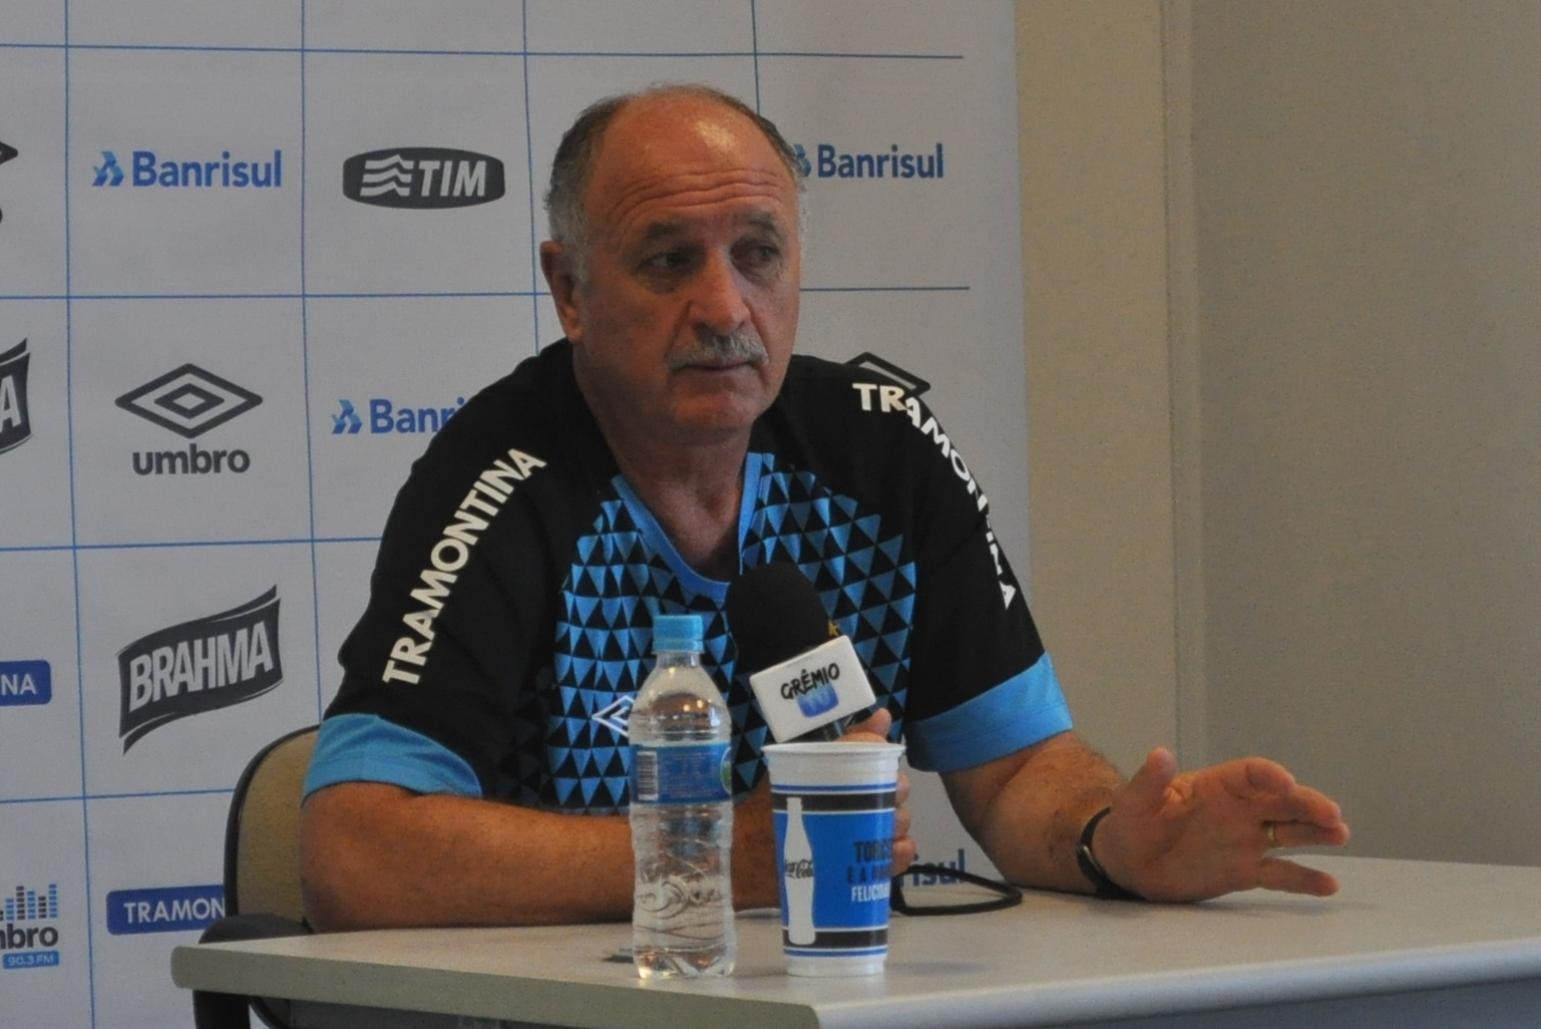 11 jan 2014 - Felipão concede entrevista coletiva no CT do Grêmio, em Porto Alegre